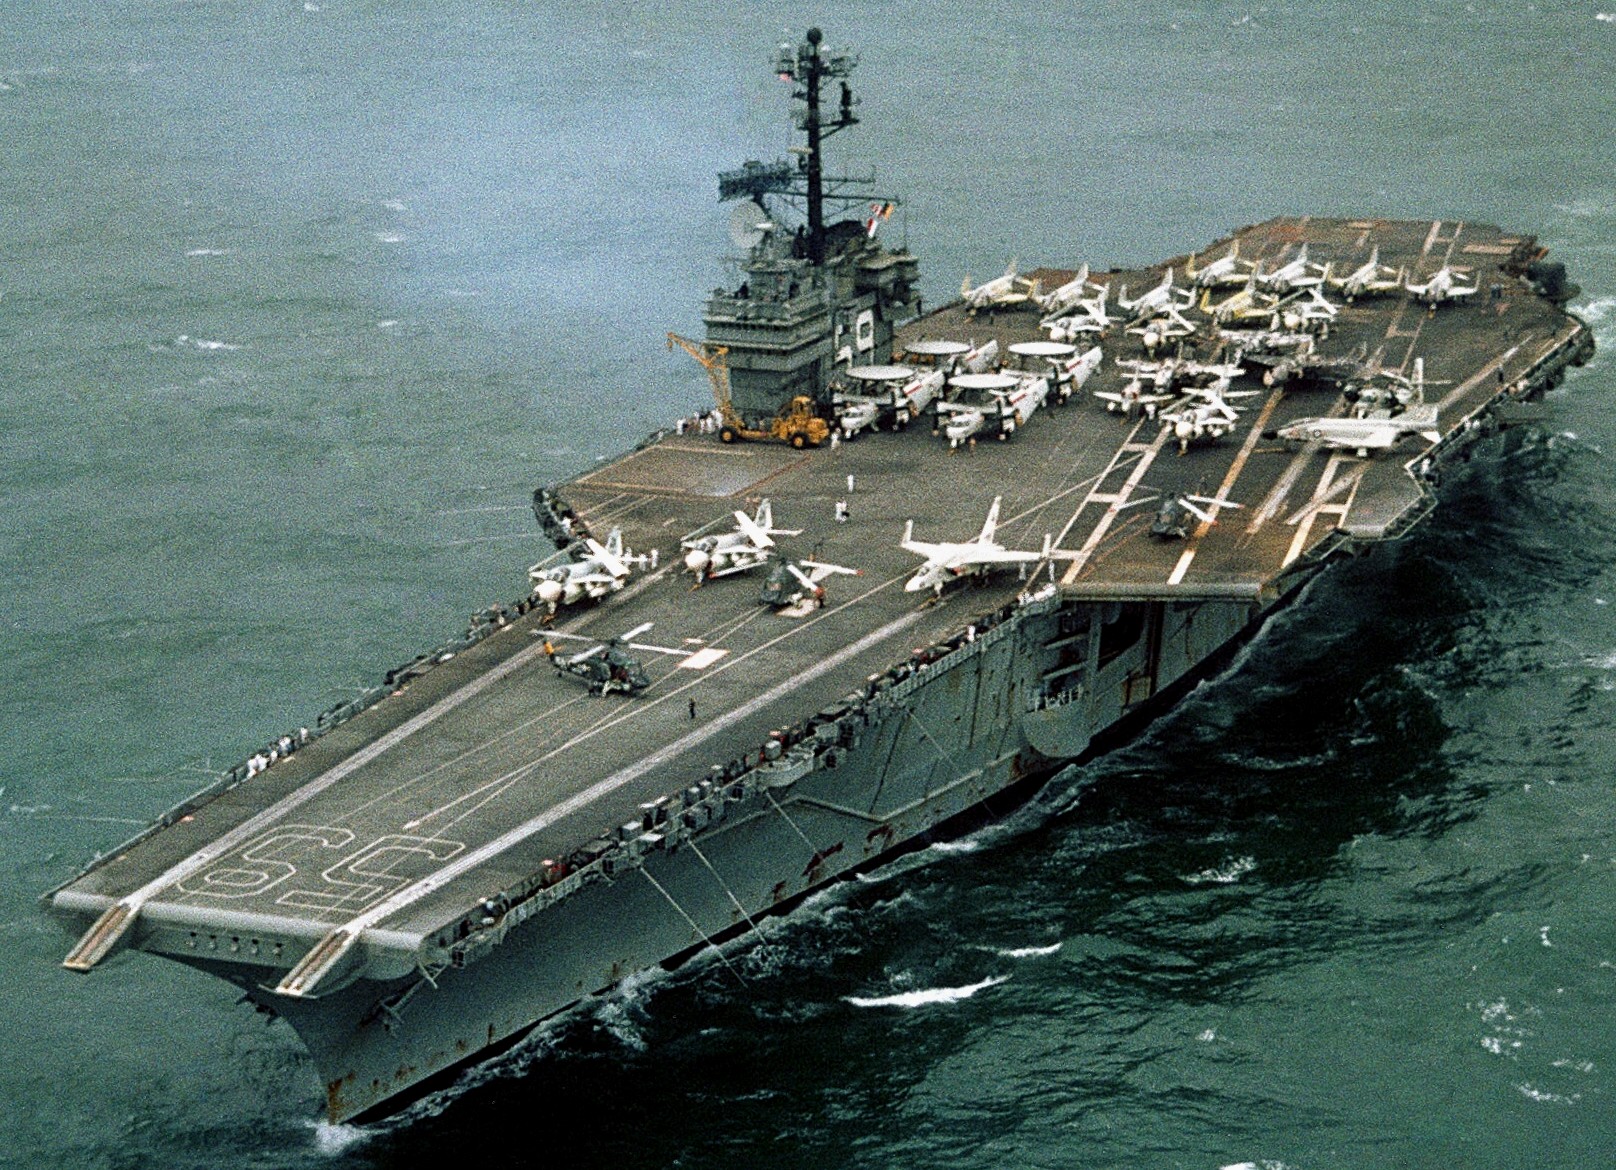 cv-59 uss forrestal aircraft carrier air wing cvw-17 us navy 1967 vietnam war 53